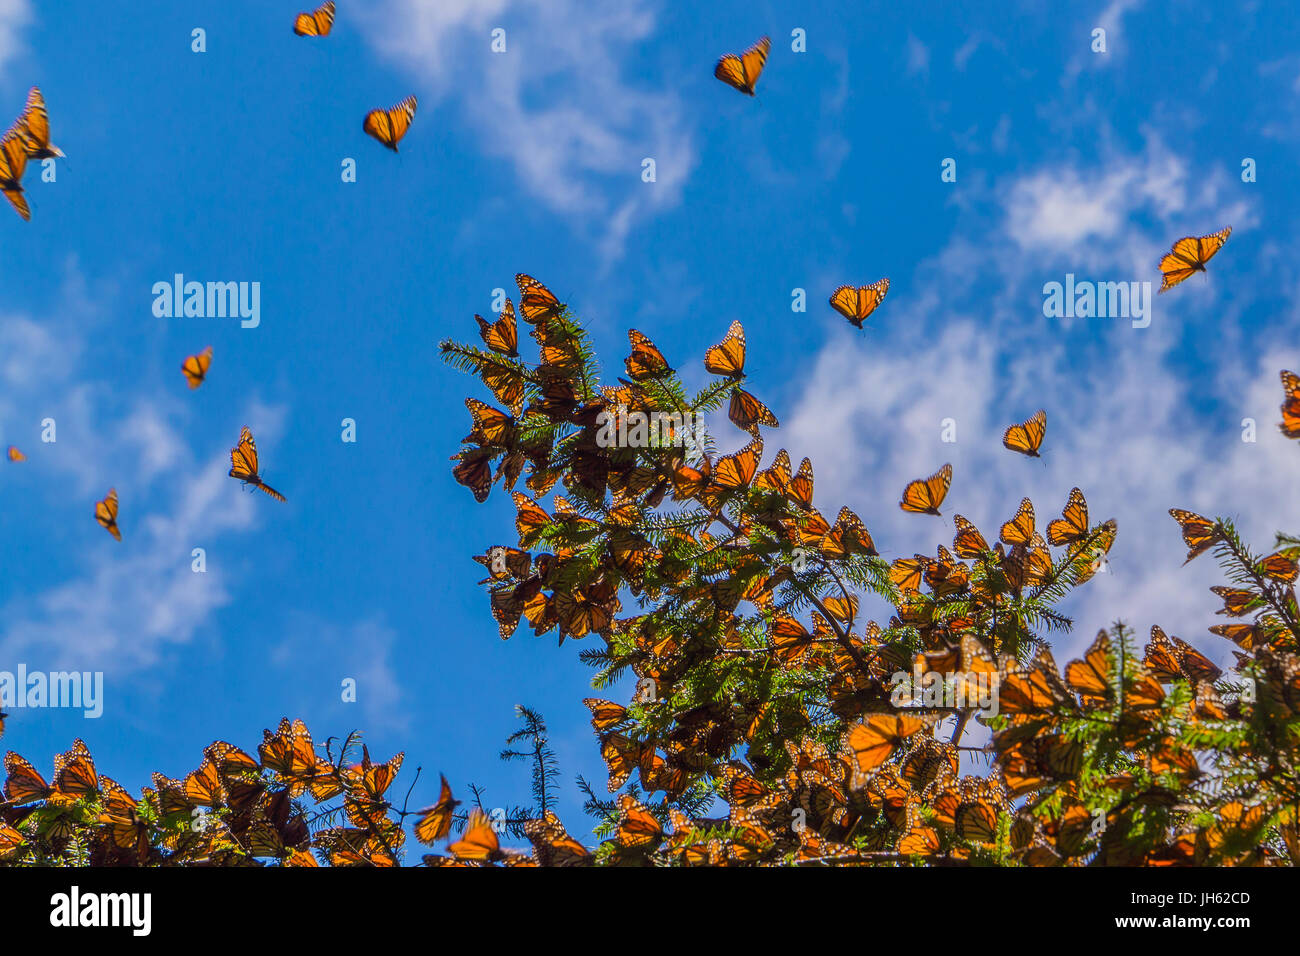 Las mariposas monarca en la rama de un árbol en el fondo de cielo azul, Michoacán, México Foto de stock